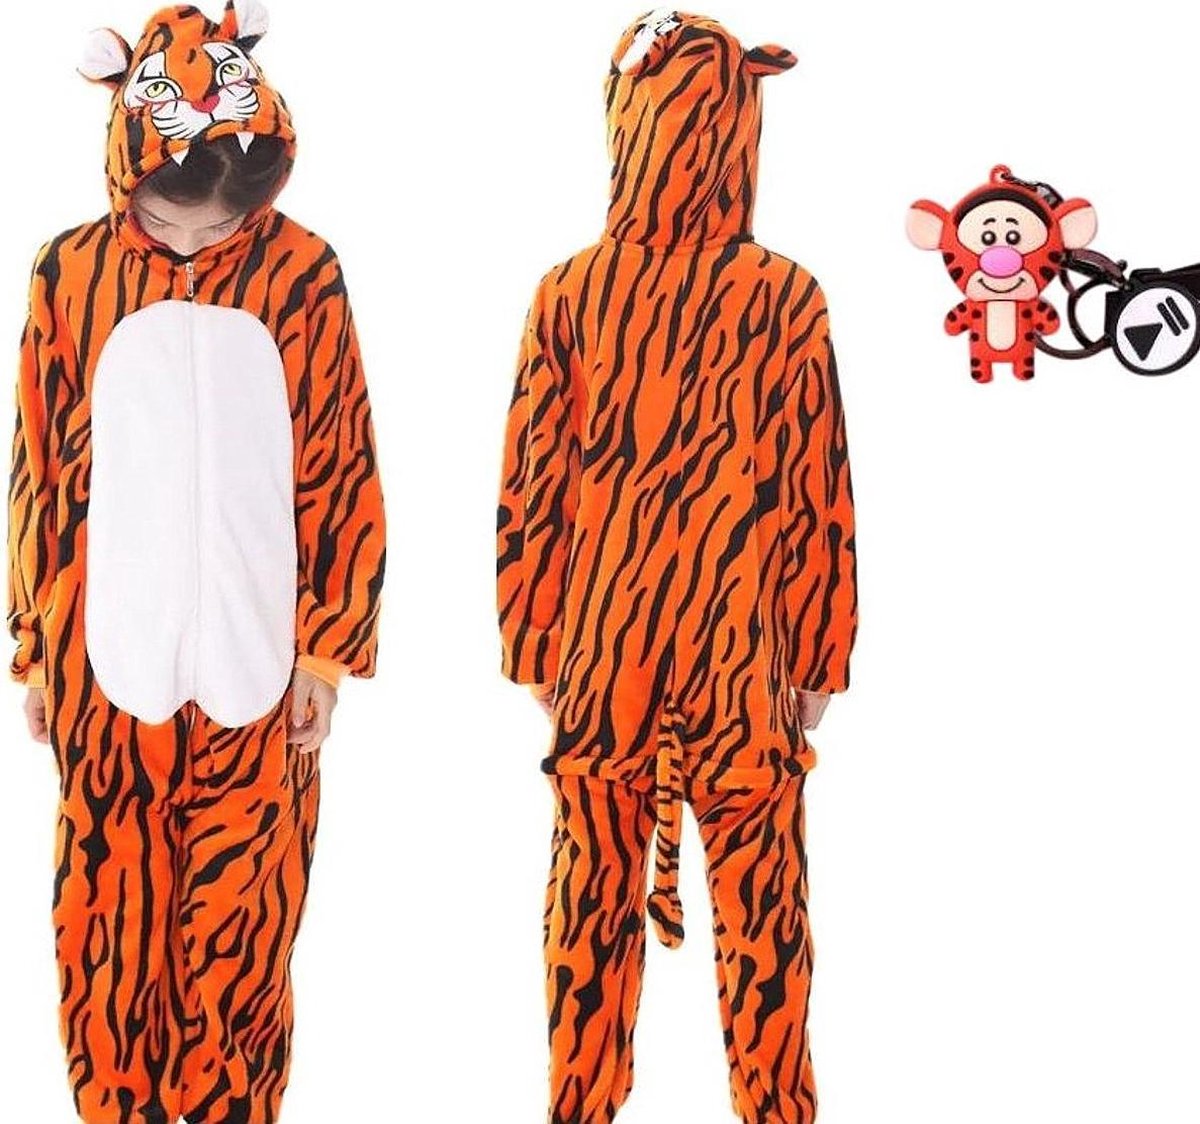 Onesie Teigetje huispak tijger kostuum jumpsuit pyjama kinderen - 128-134 (130) + GRATIS tas/sleutelhanger verkleedkleding